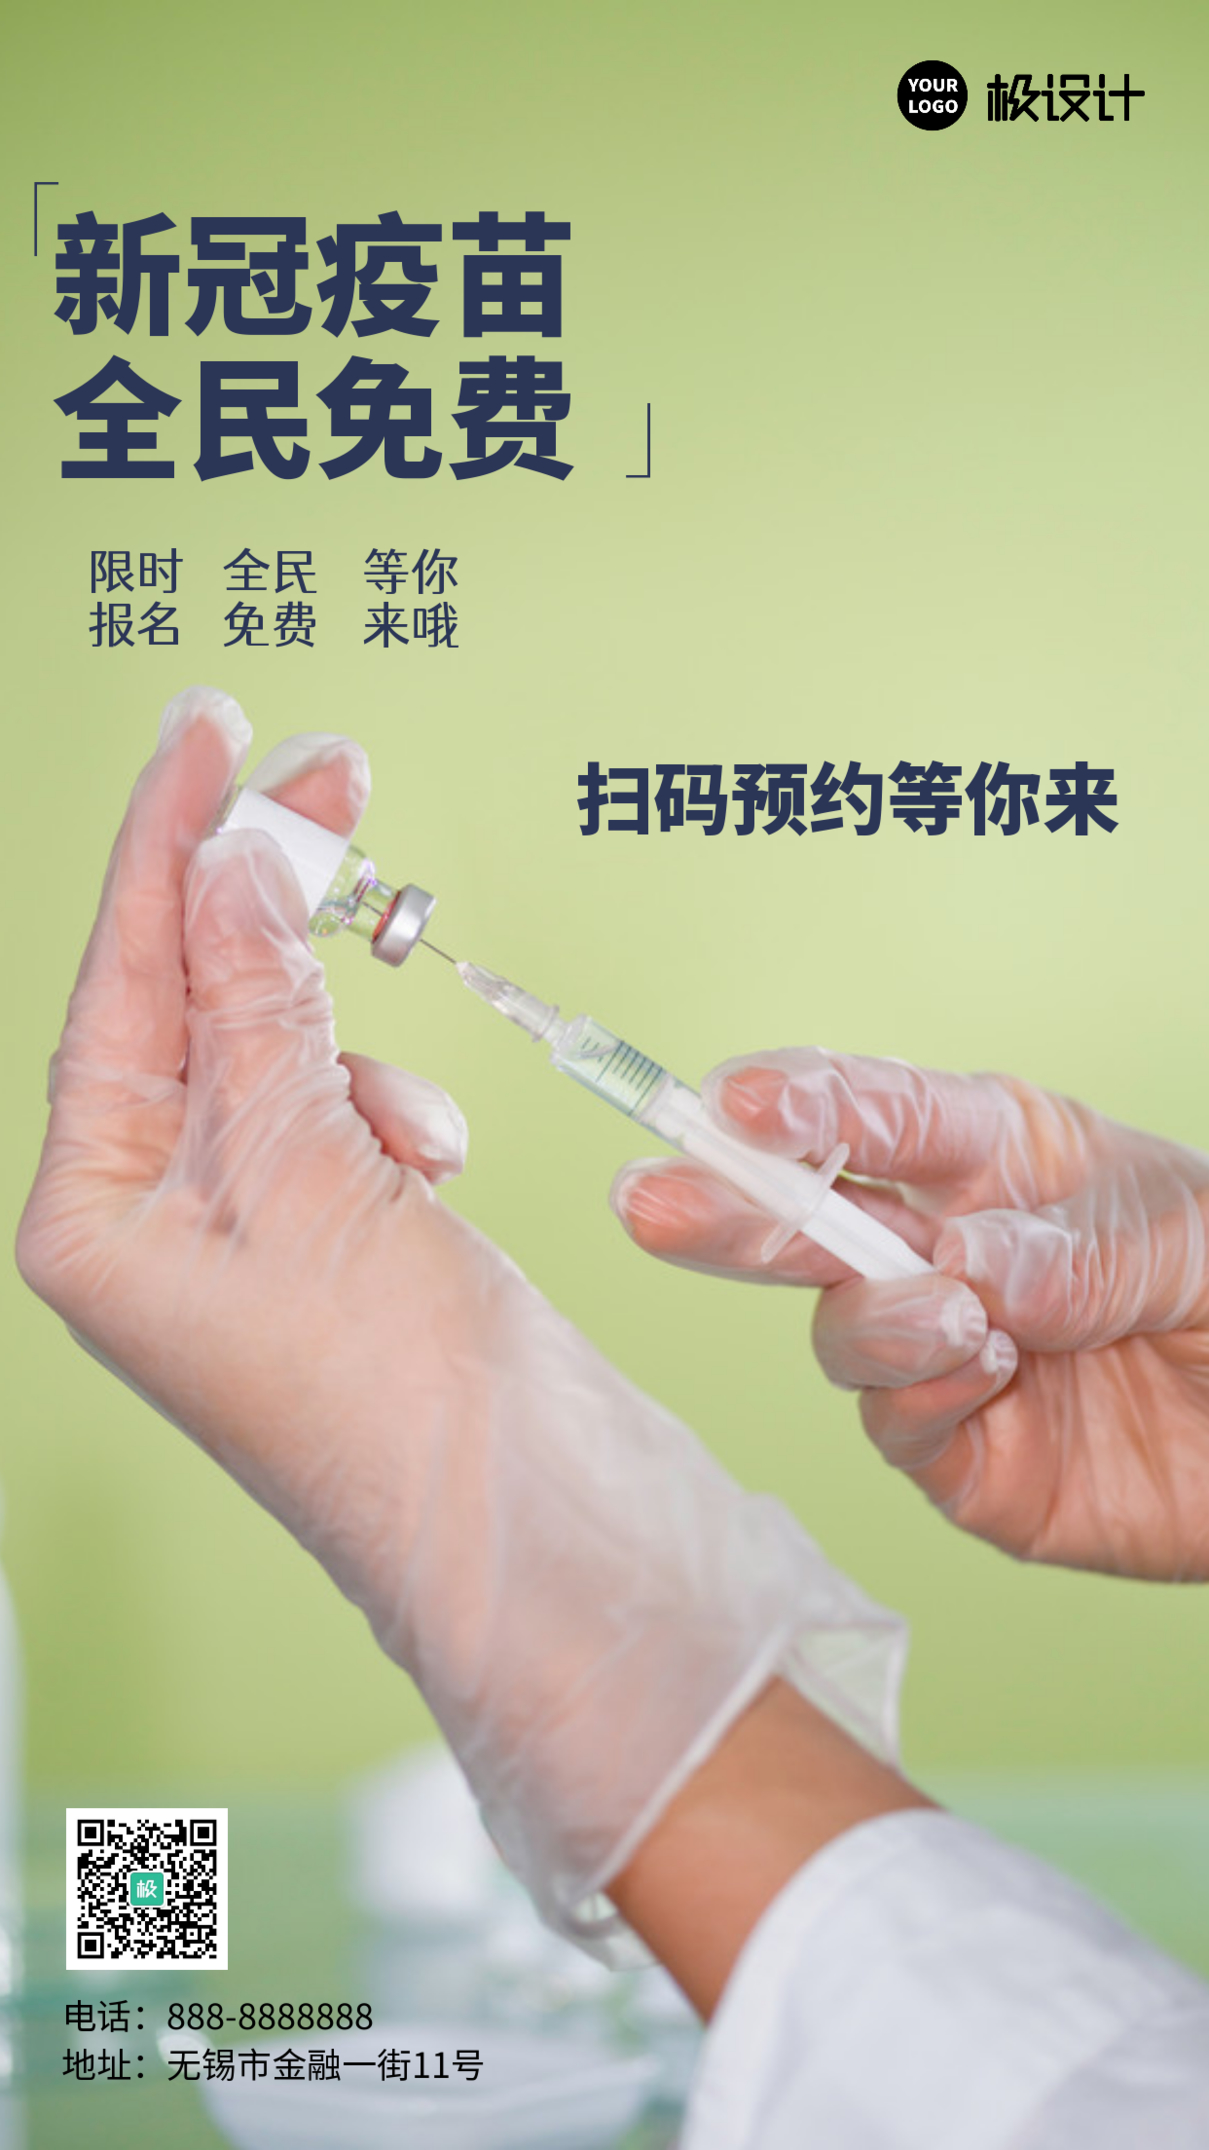 简约风格新冠疫苗全民免费宣传手机海报